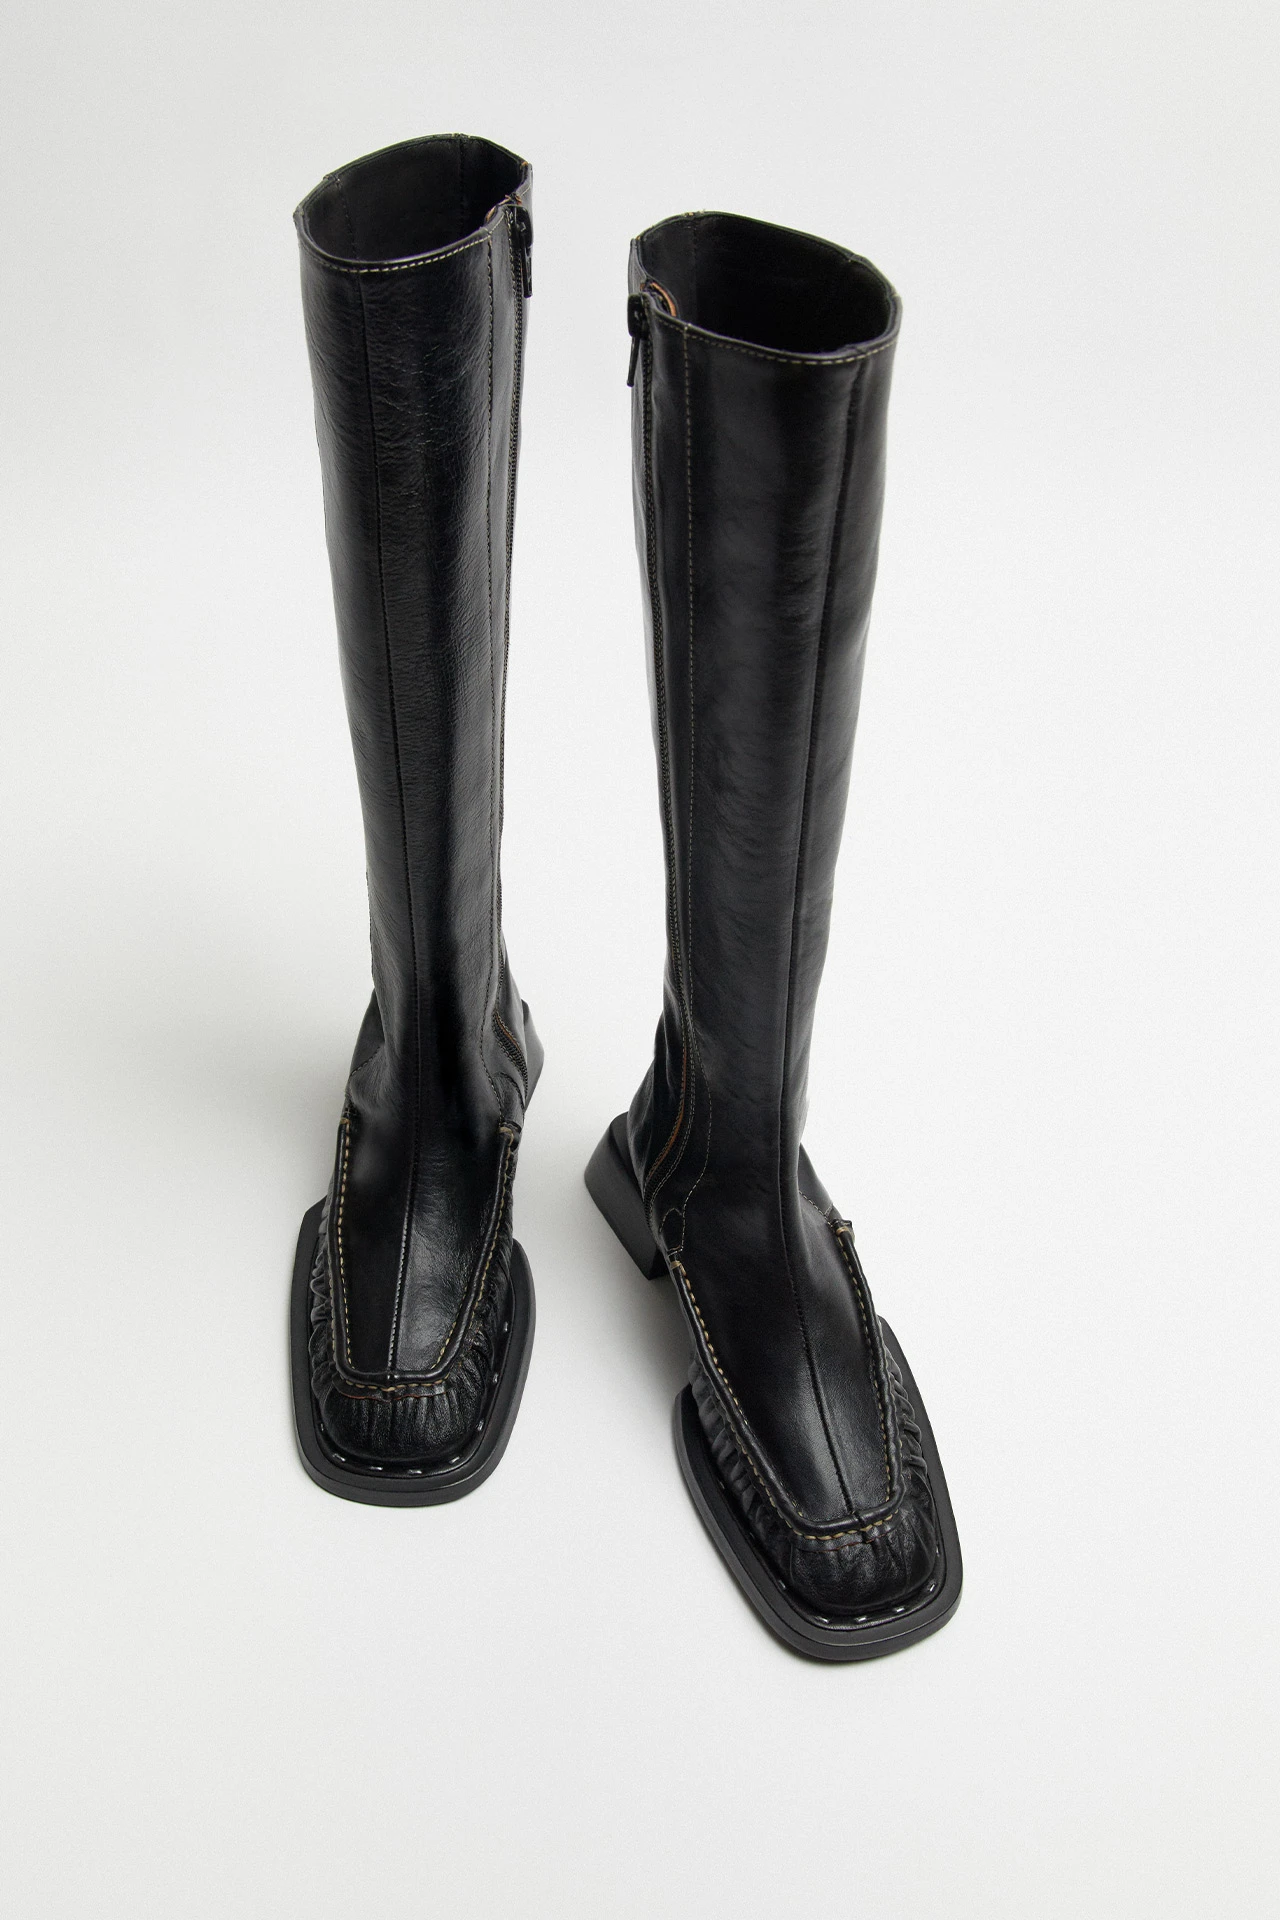 Miista-pats-black-tall-boots-04